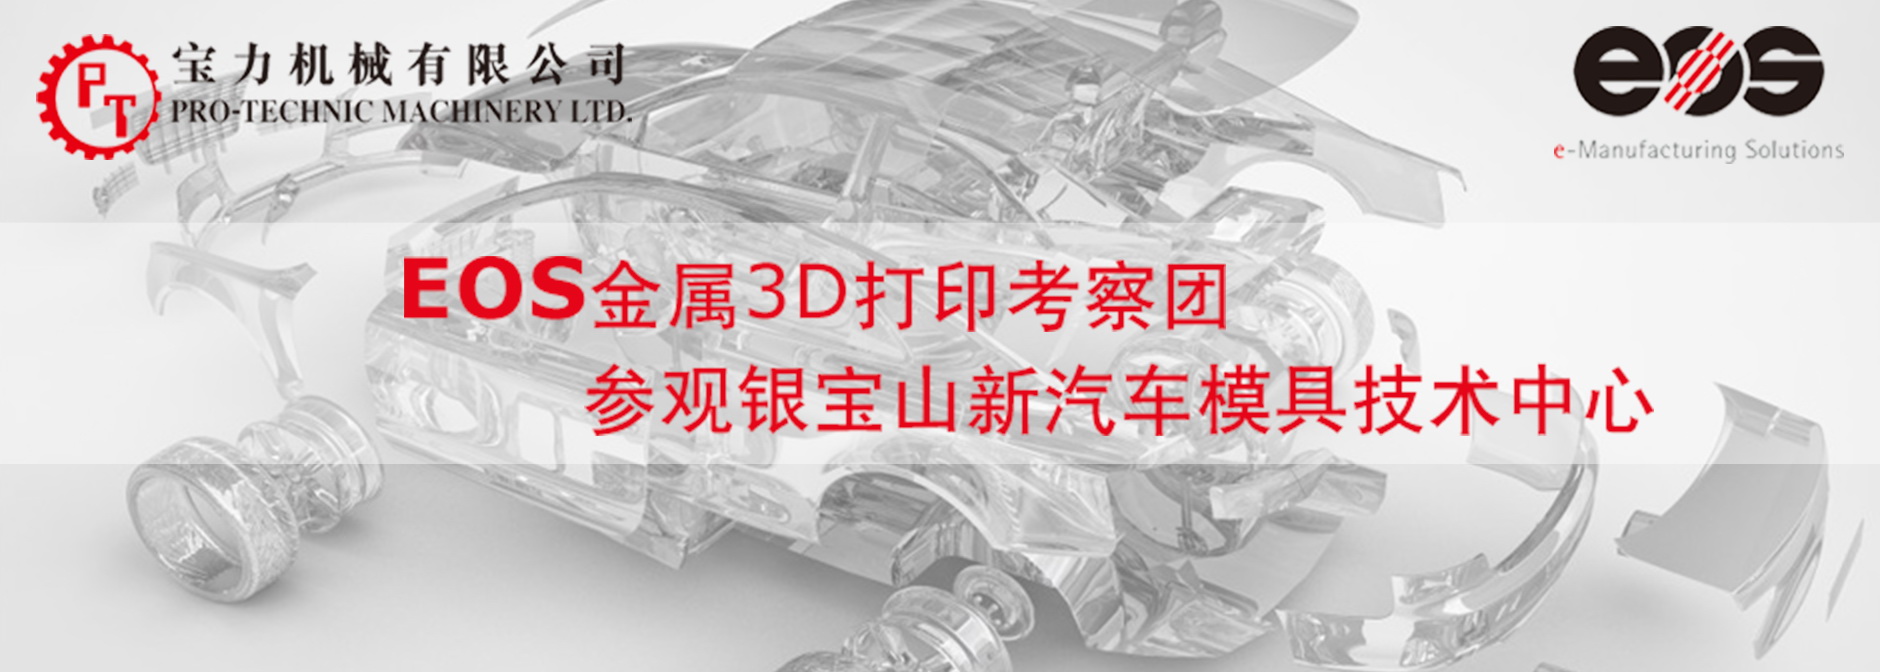 金属3D打印考察团 - 参观银宝山新汽车模具技术中心